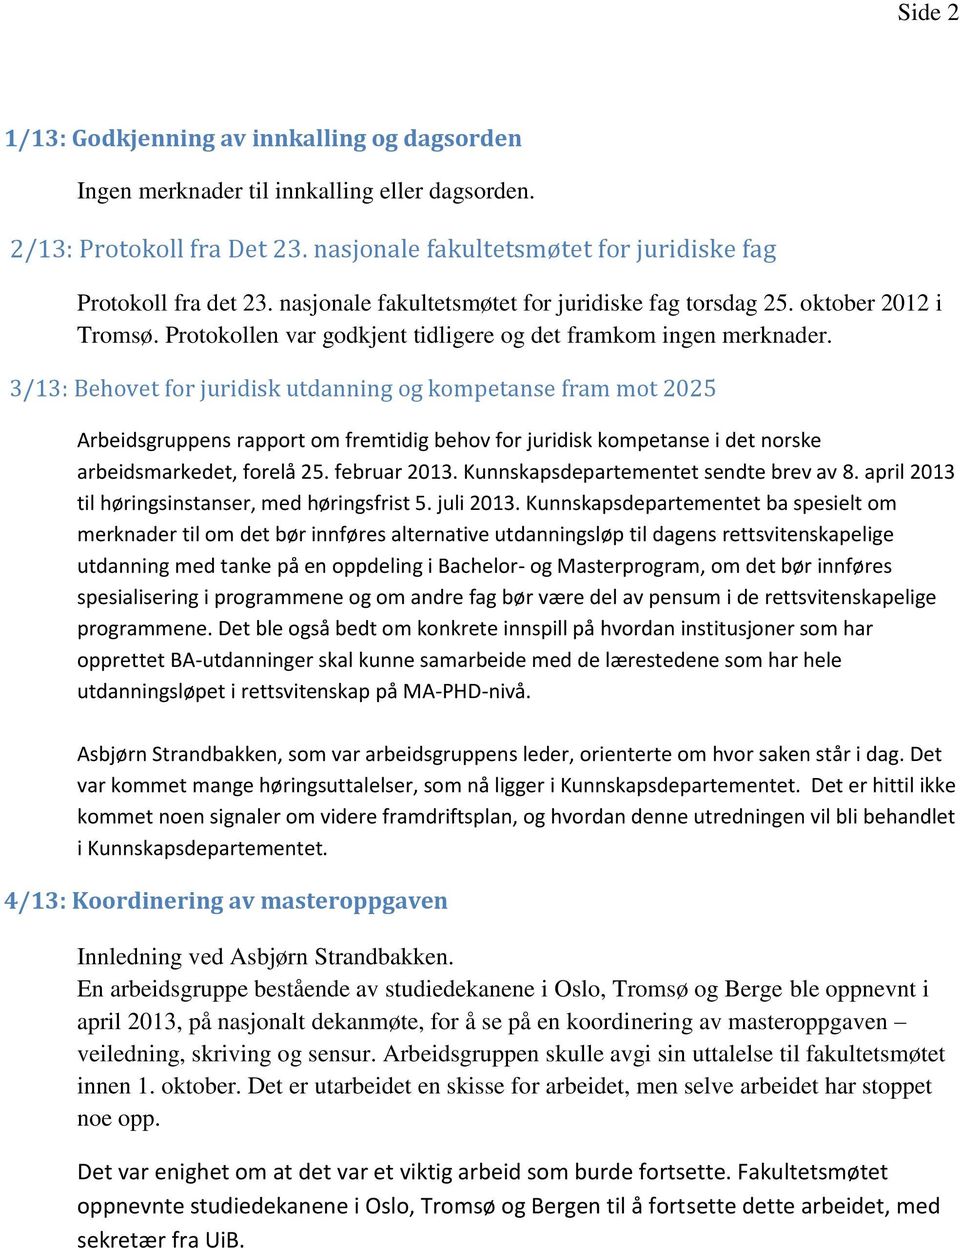 3/13: Behovet for juridisk utdanning og kompetanse fram mot 2025 Arbeidsgruppens rapport om fremtidig behov for juridisk kompetanse i det norske arbeidsmarkedet, forelå 25. februar 2013.